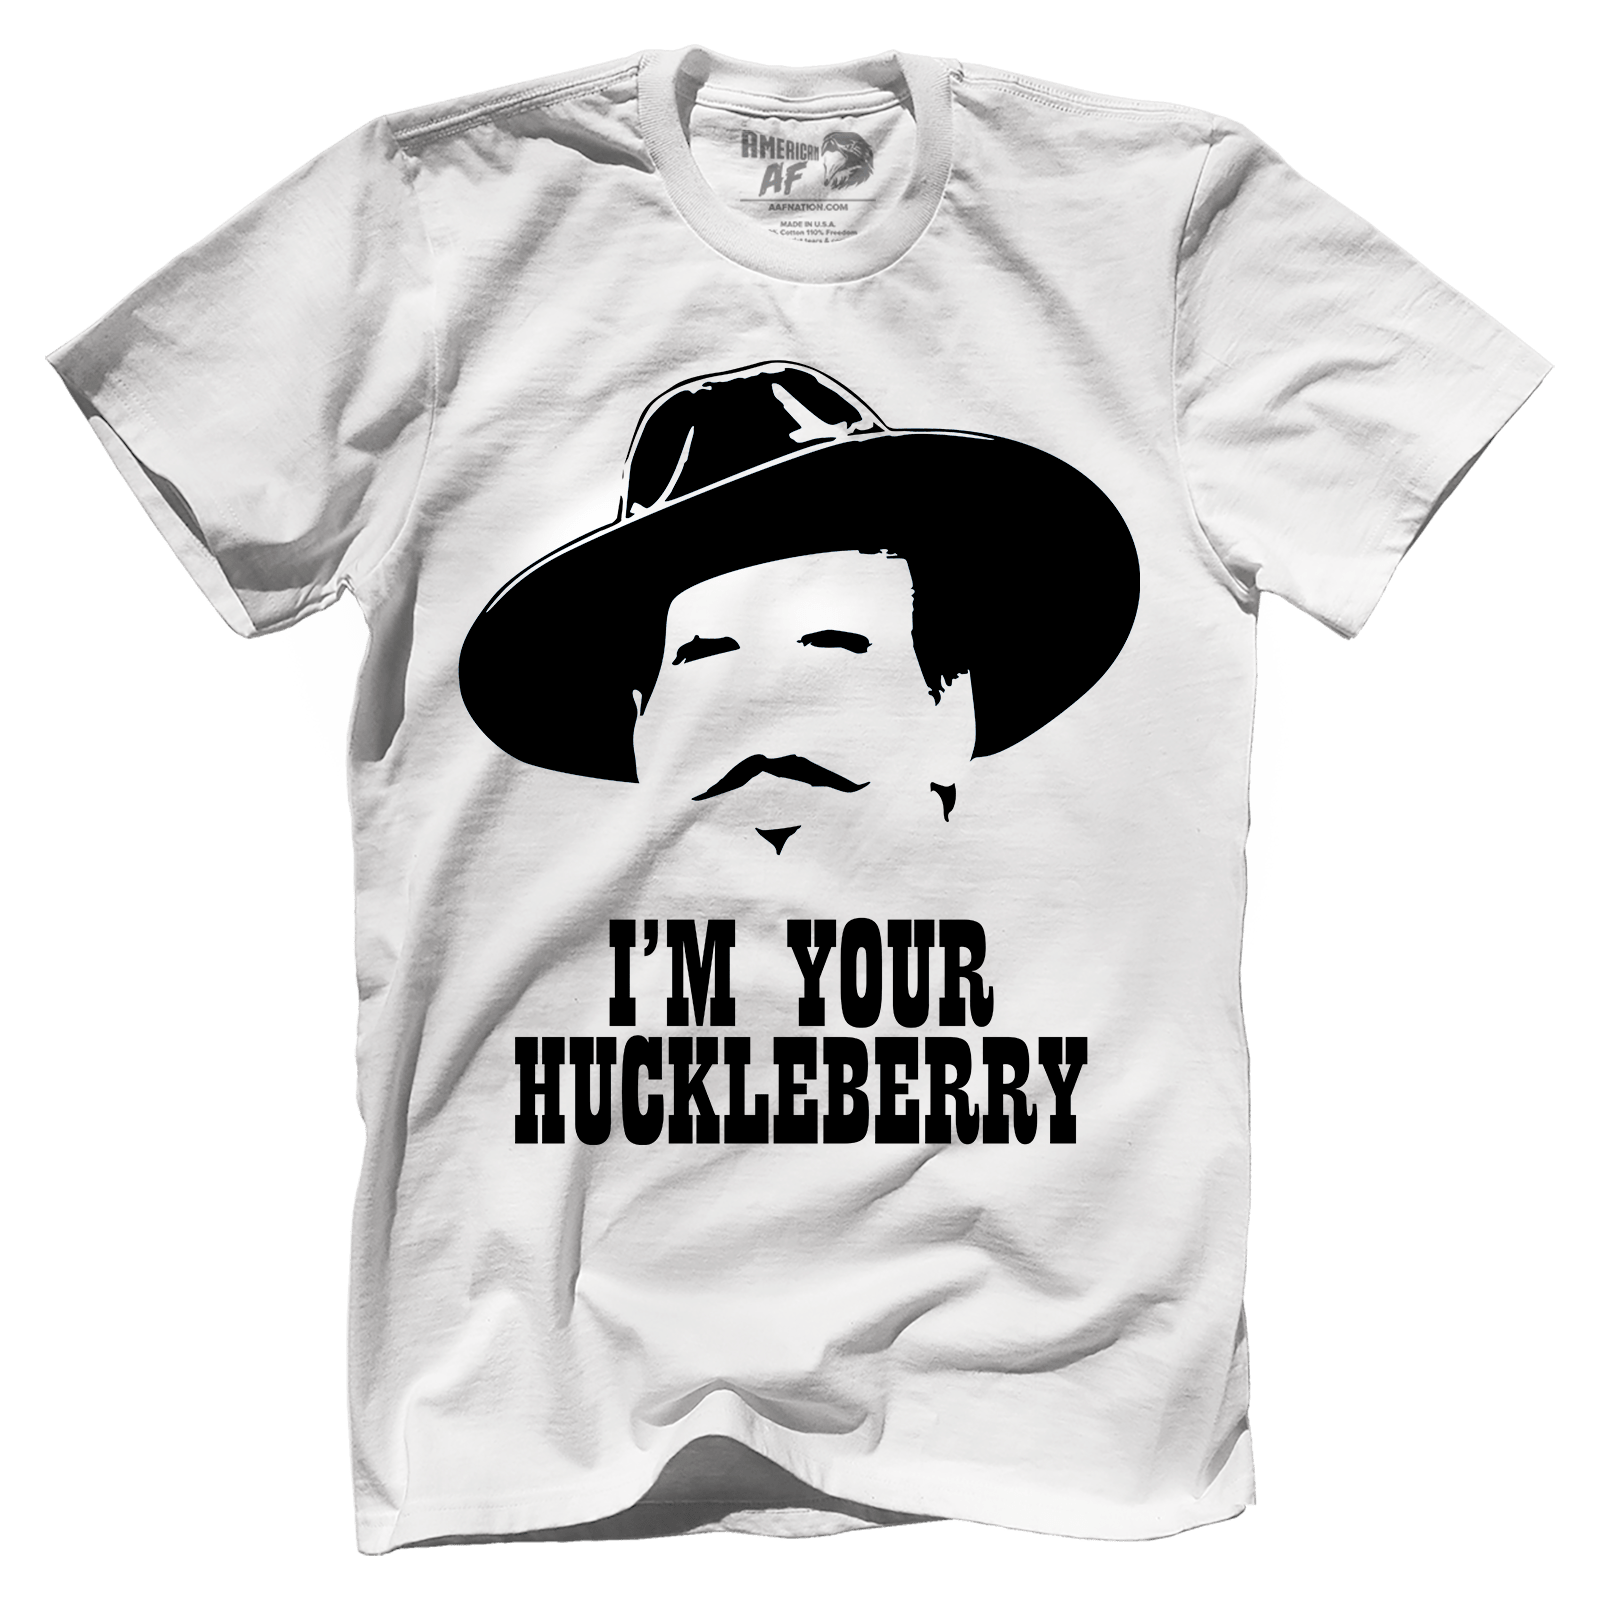 I'm Your Huckleberry | American AF - AAF Nation